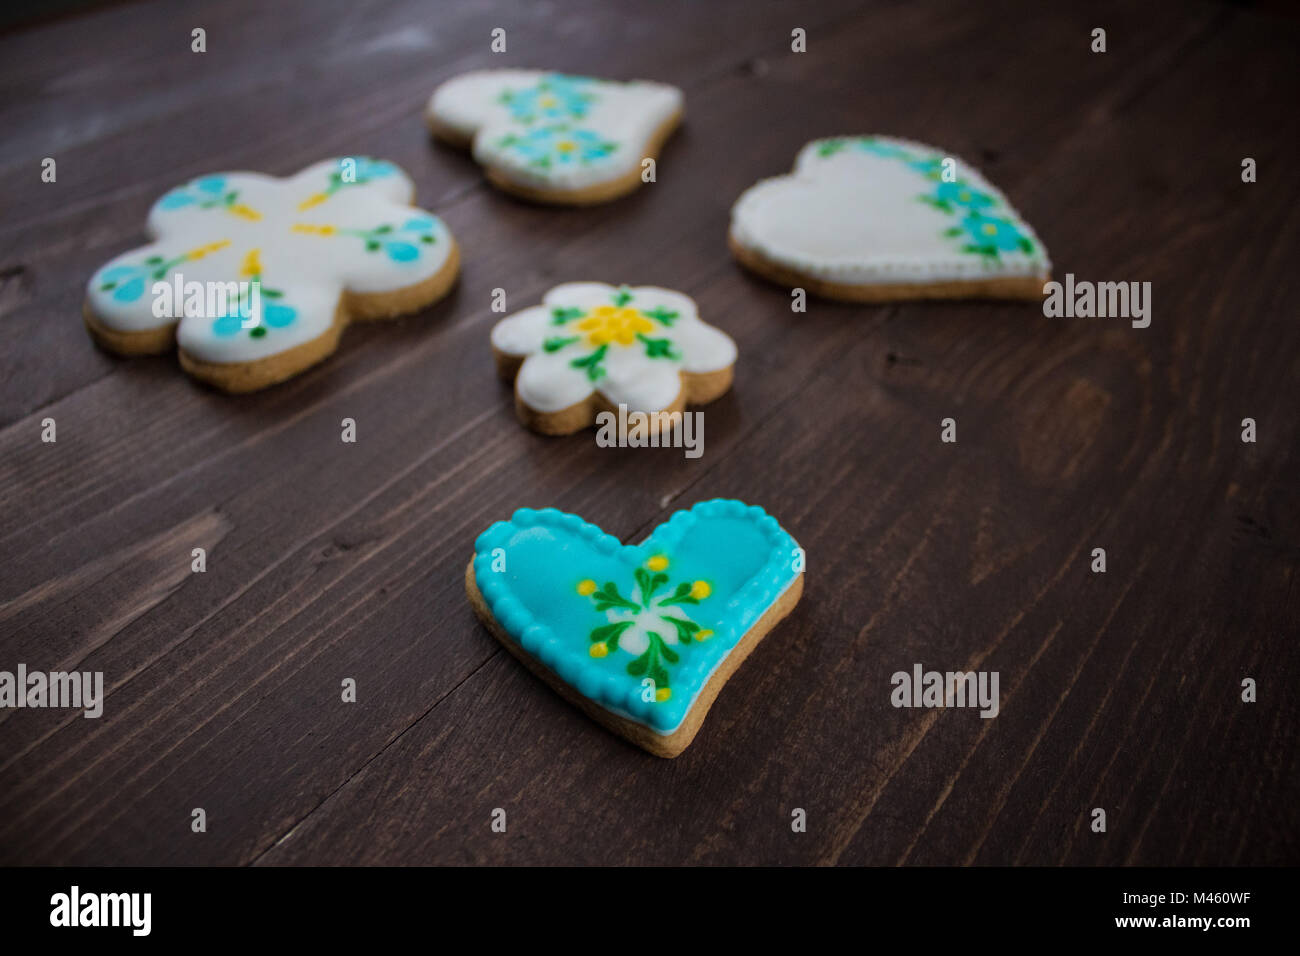 Homemade homemade cookies Stock Photo